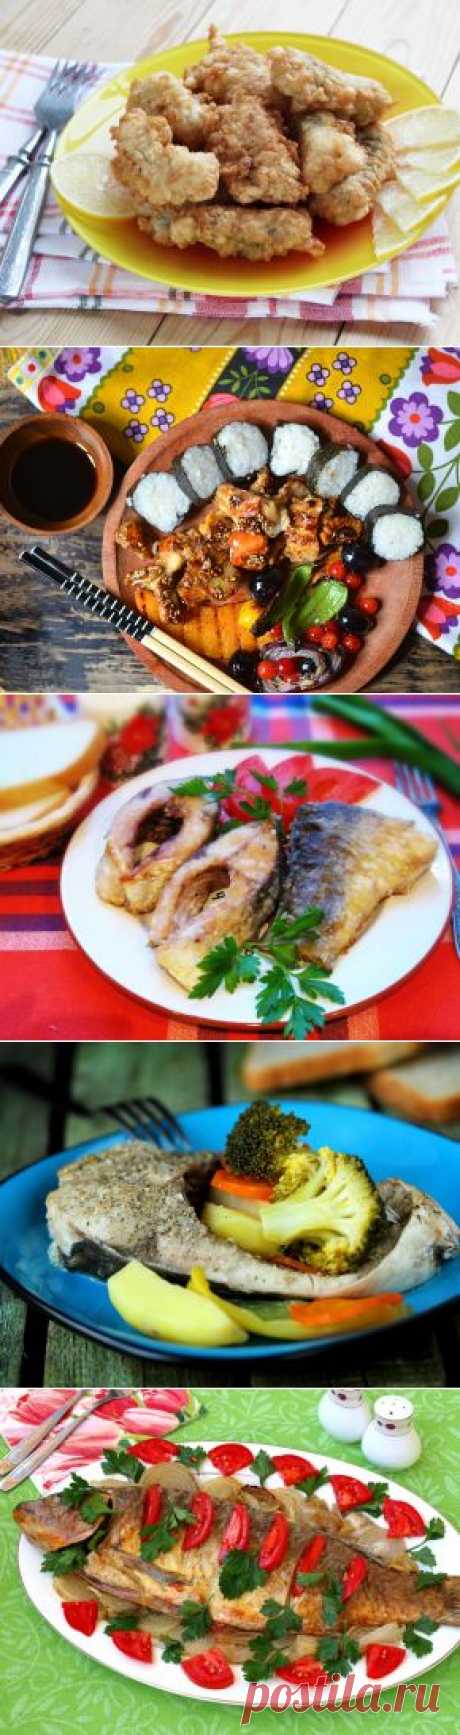 Рецепты рыбных блюд в кляре, фольге, запеченной рыбы в духовке, шаг за шагом с фотографиями.